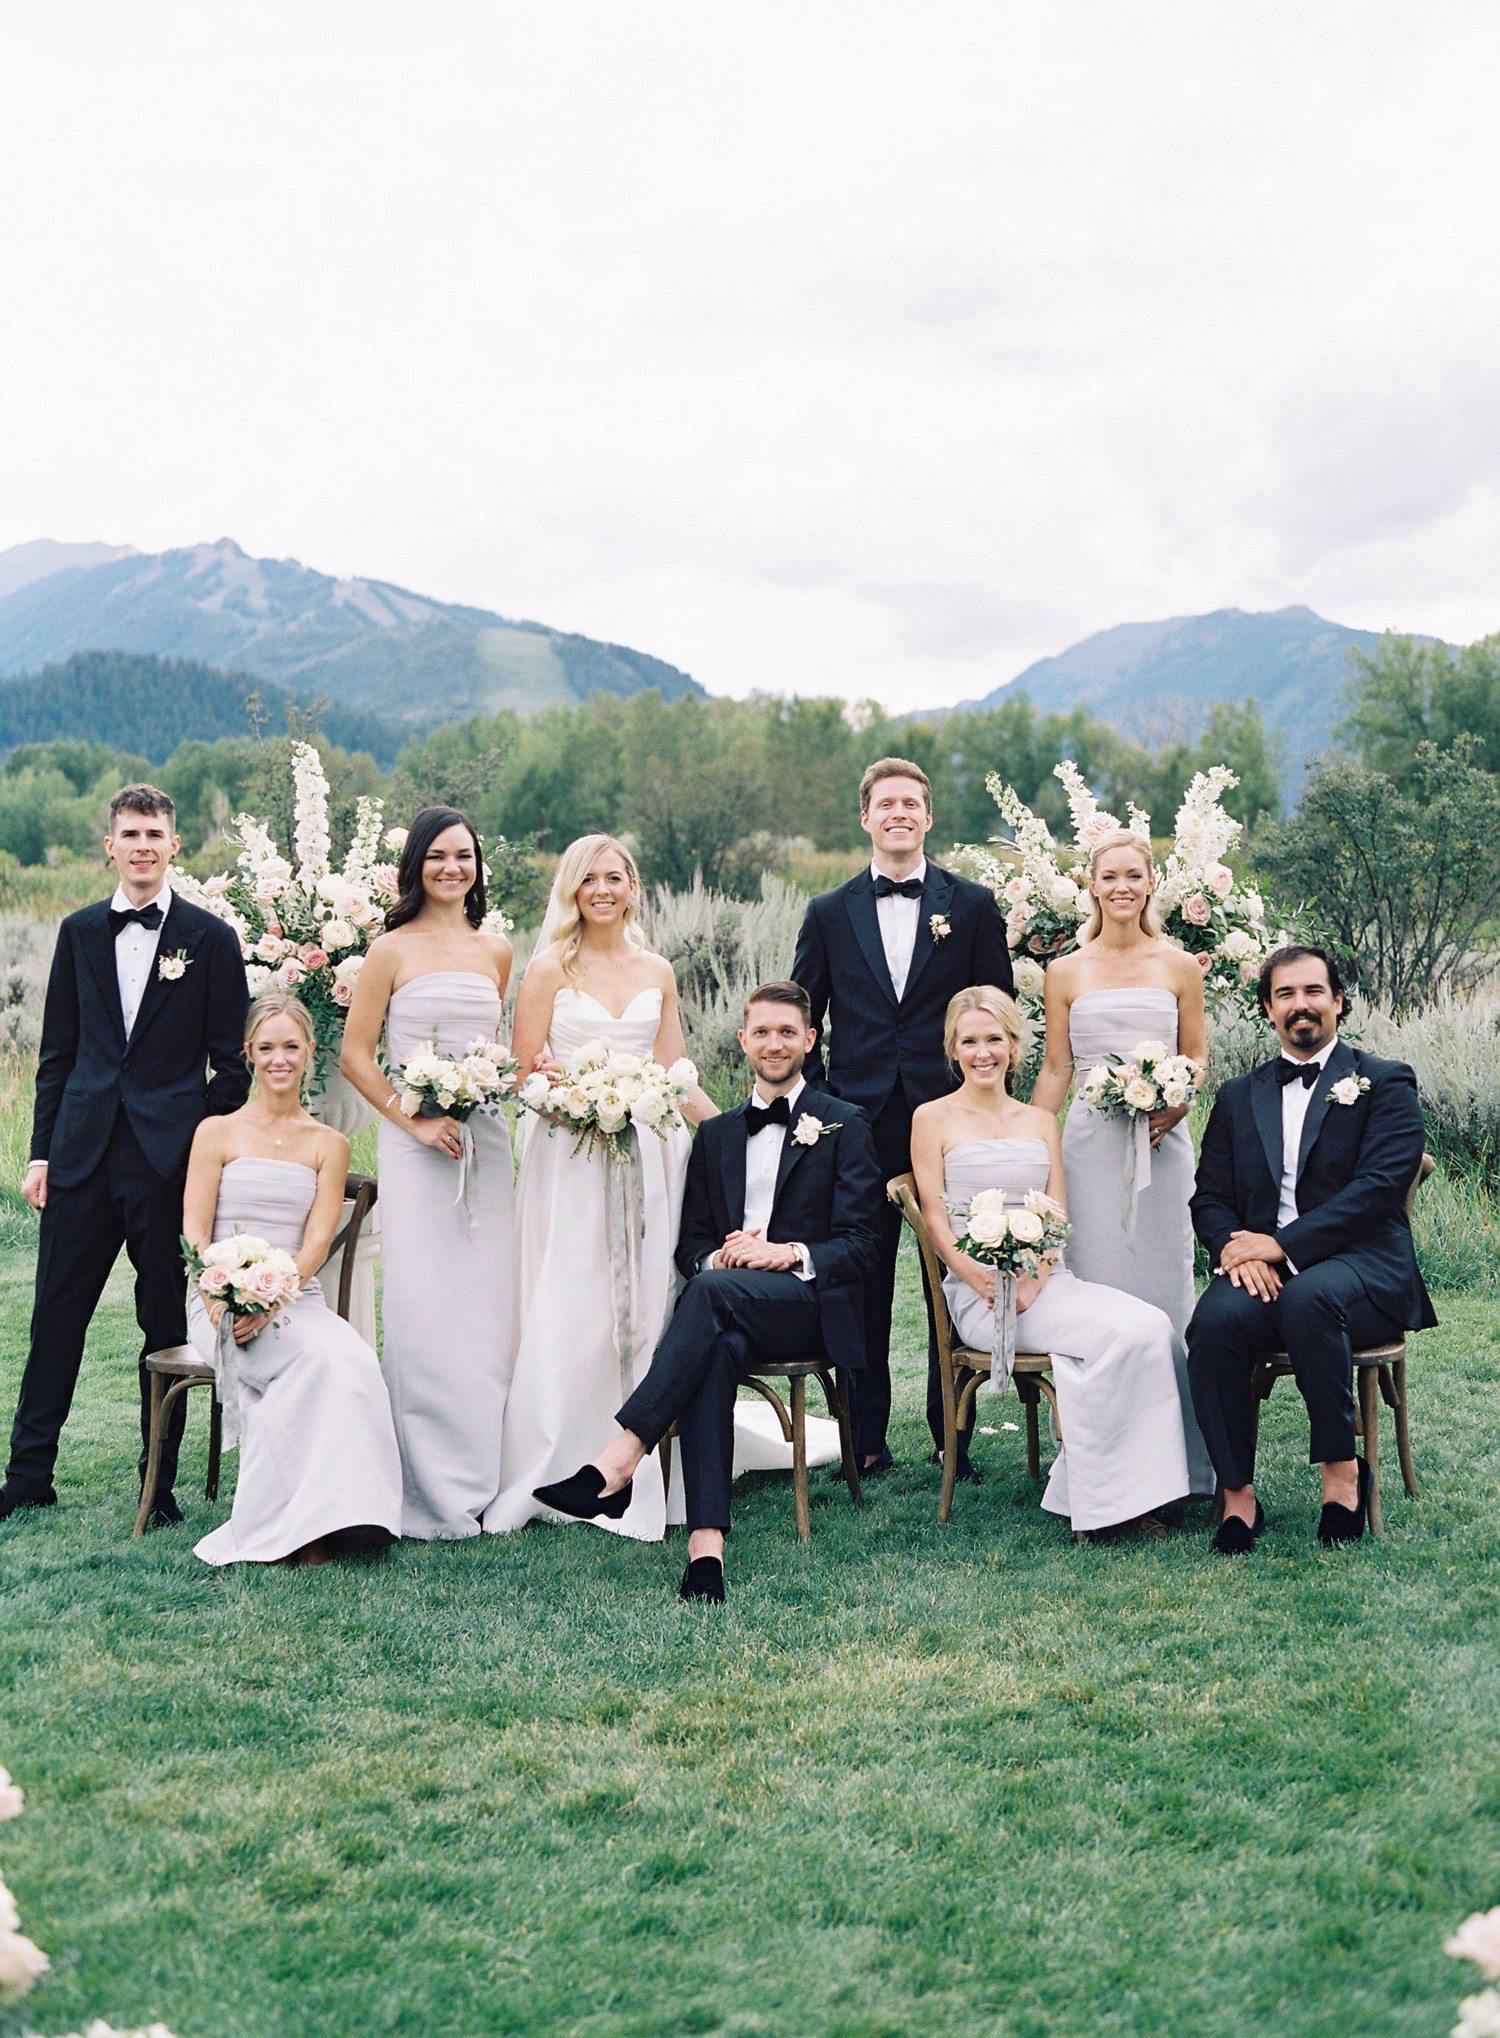 Wedding party photos at Aspen Meadows Resort. 